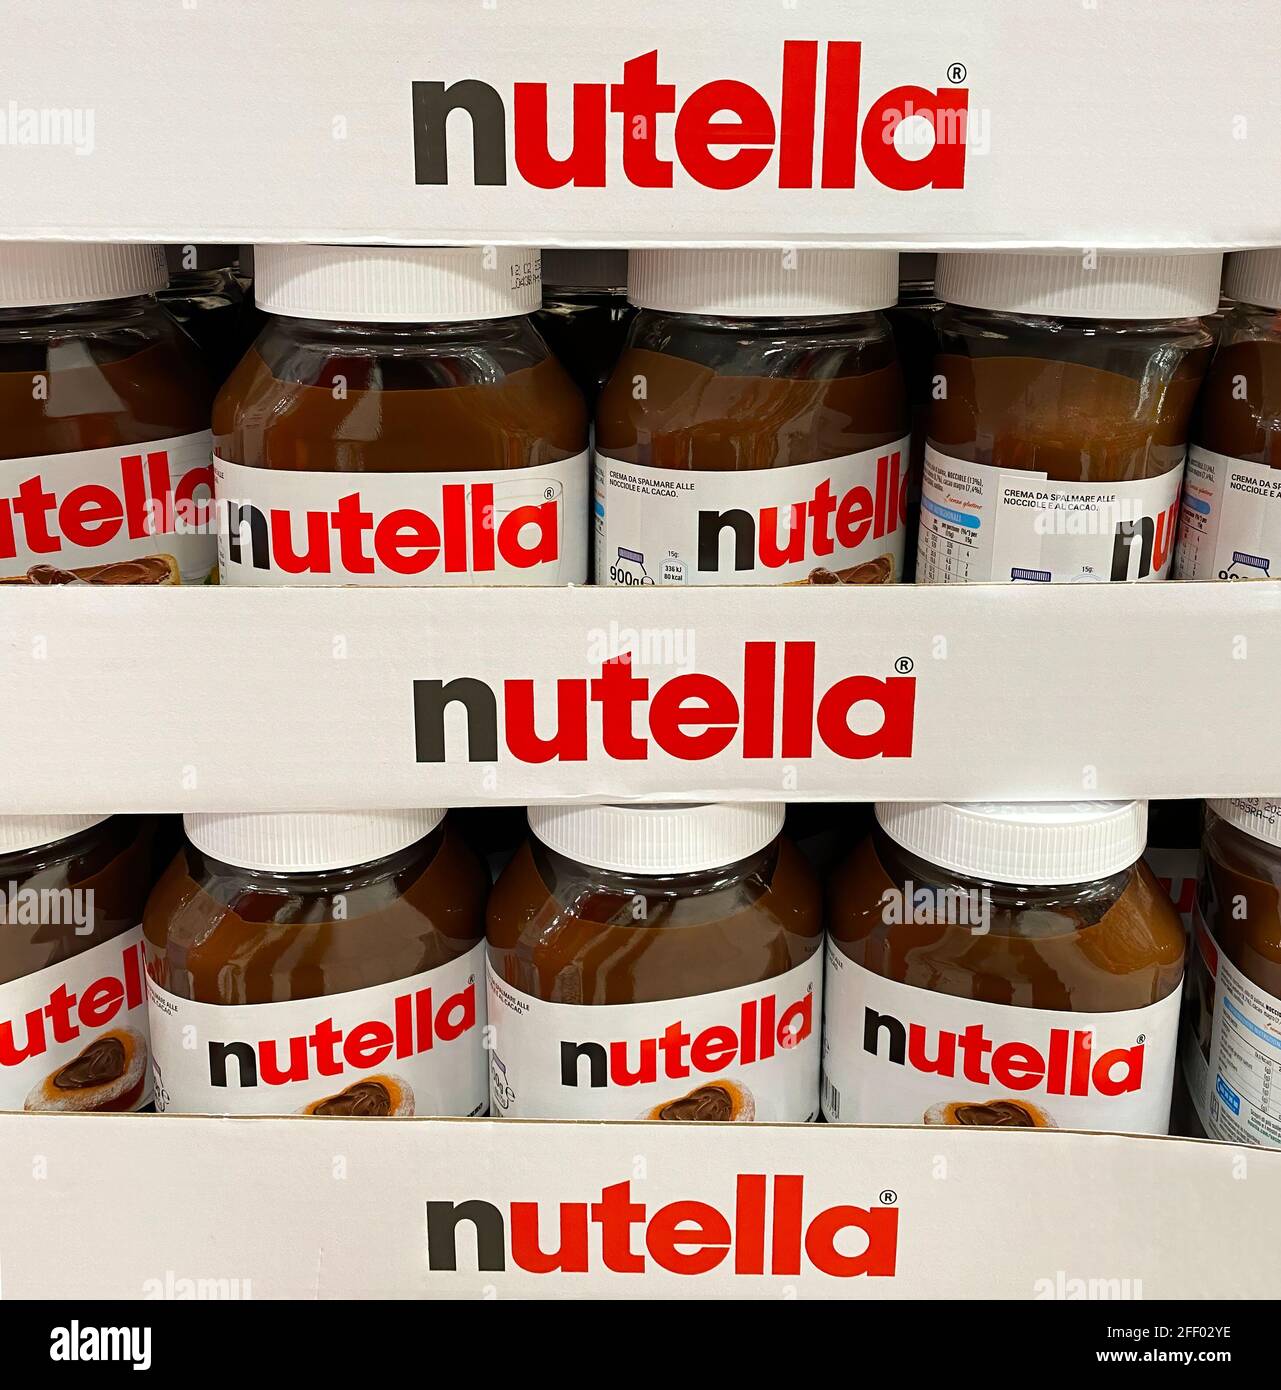 Nutella hazelnut spread jars in shelf of an italian supermarket. Nutella is  a famous brand by italian Ferrero compan Stock Photo - Alamy